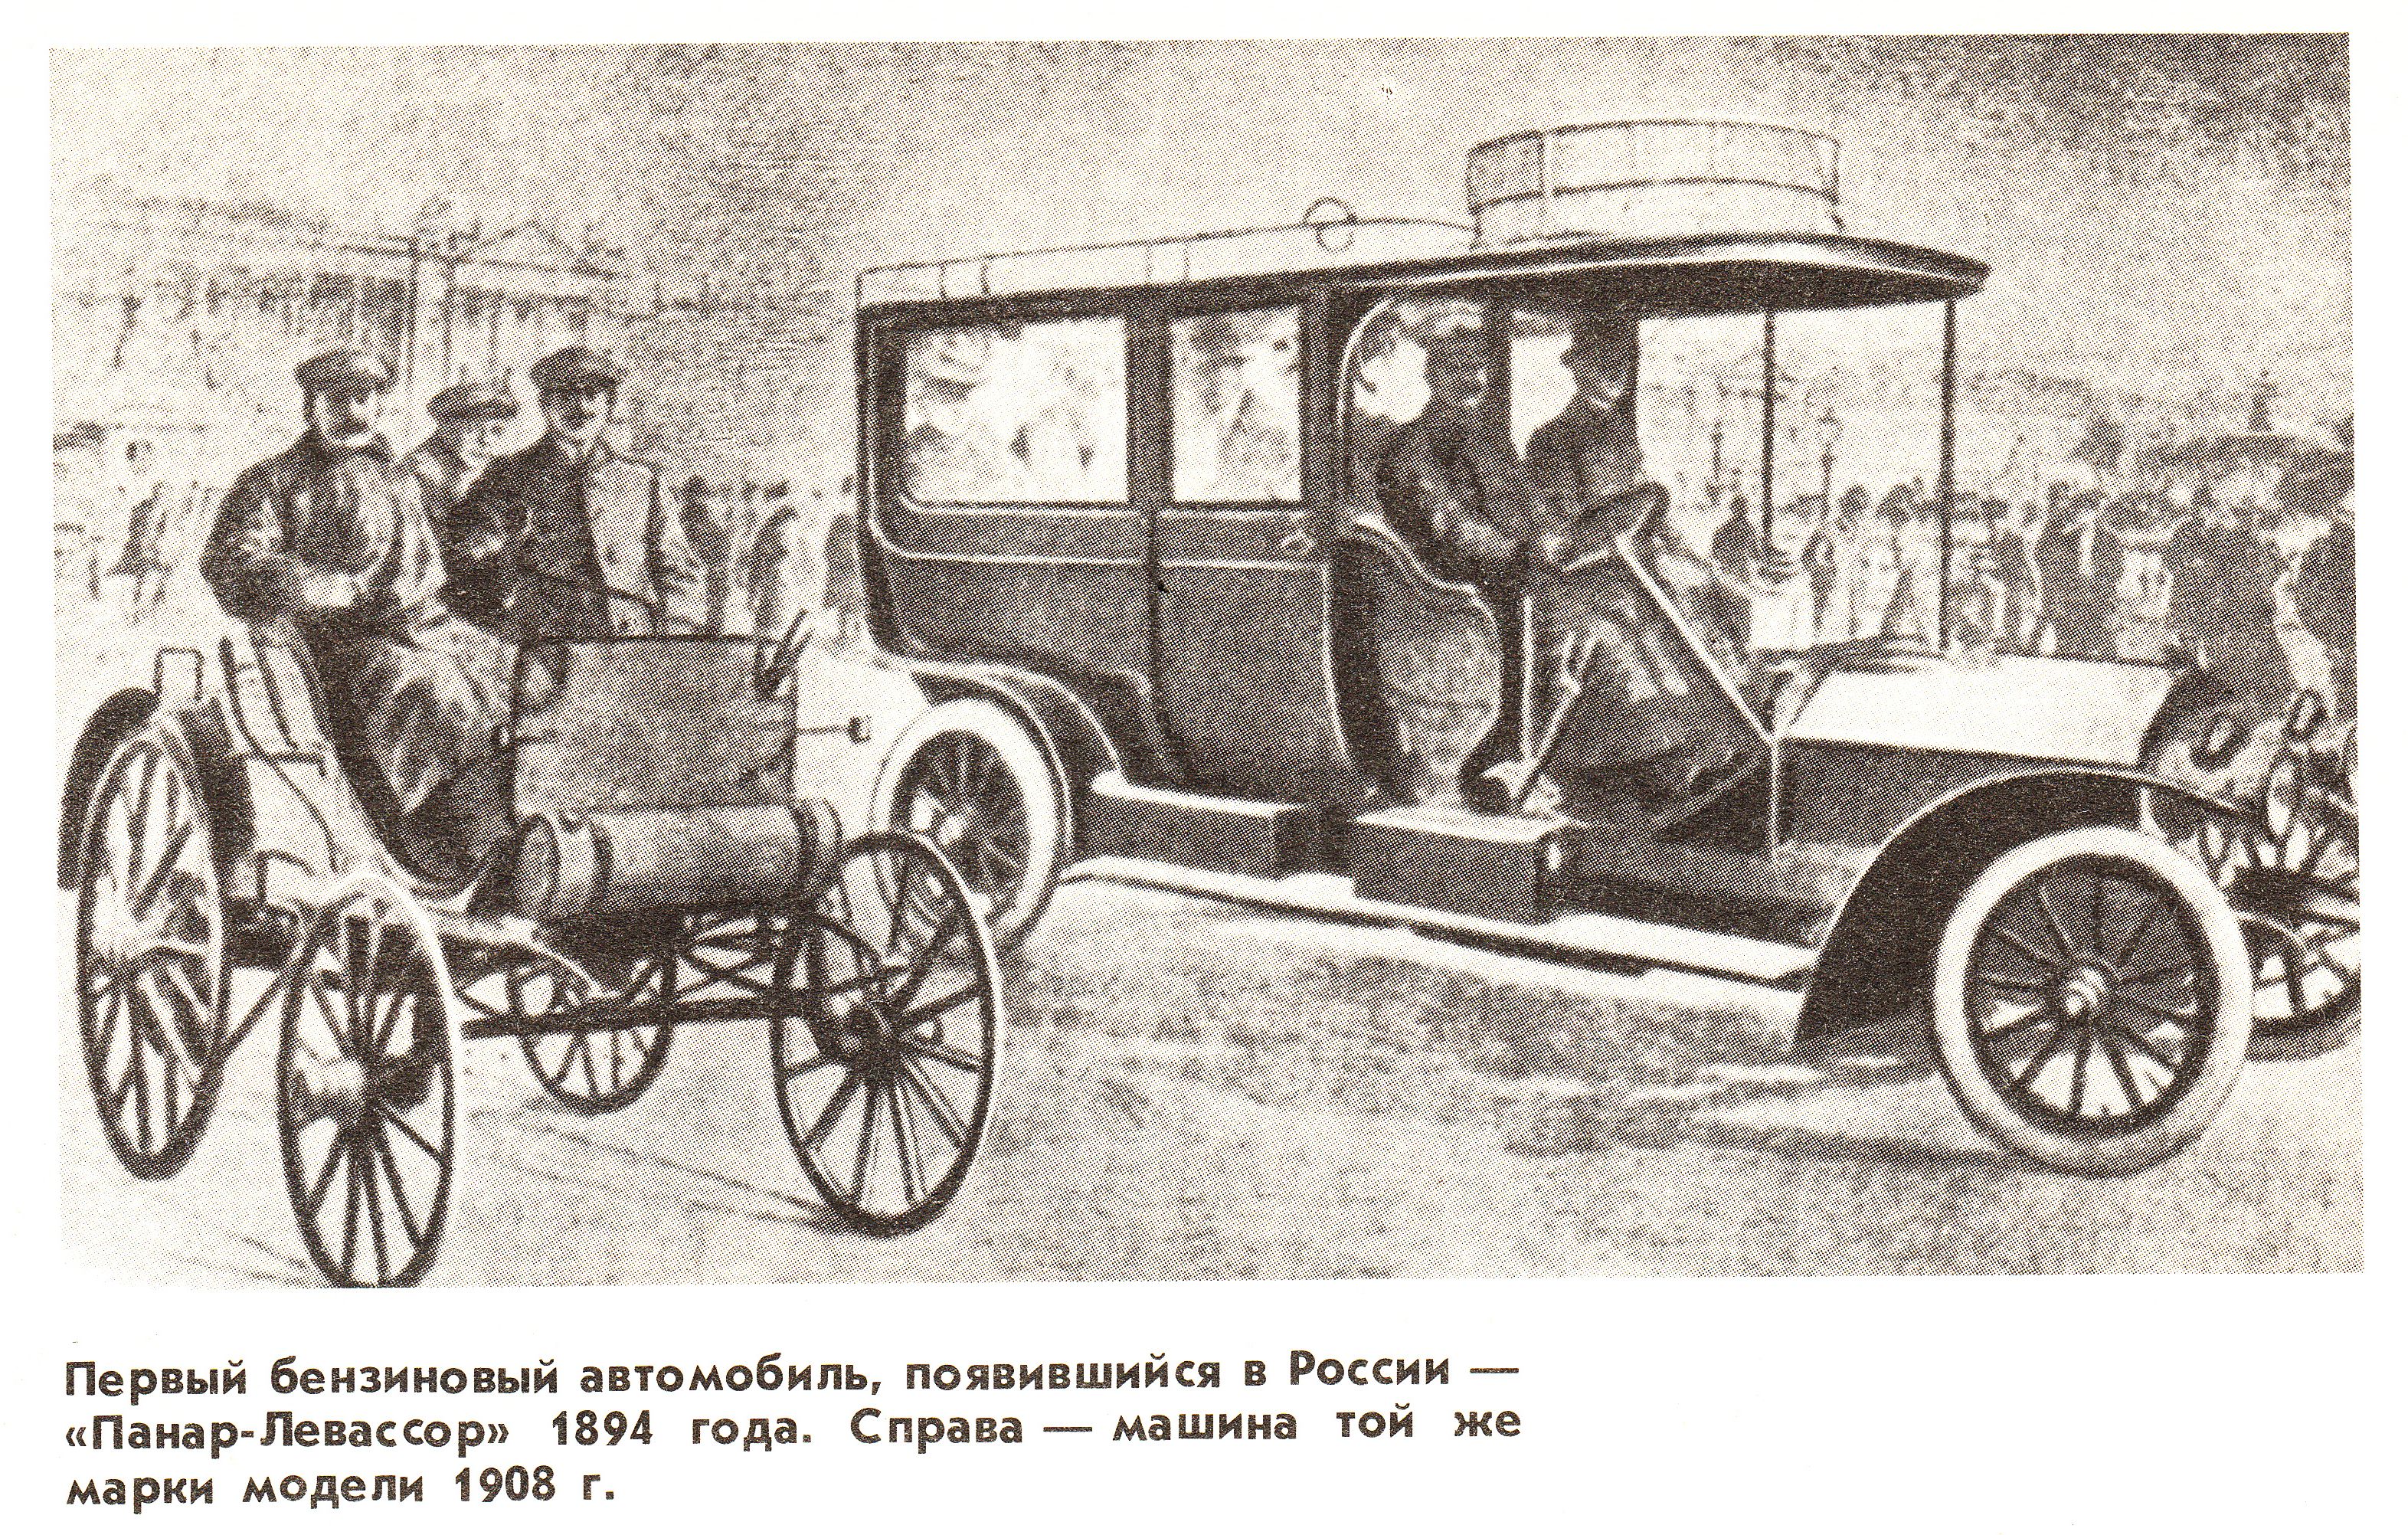 Текст первых машин. Панар-Левассор 1894. Панар Левассор 1894 год. Первый бензиновый автомобиль. Первый автомобиль в России.